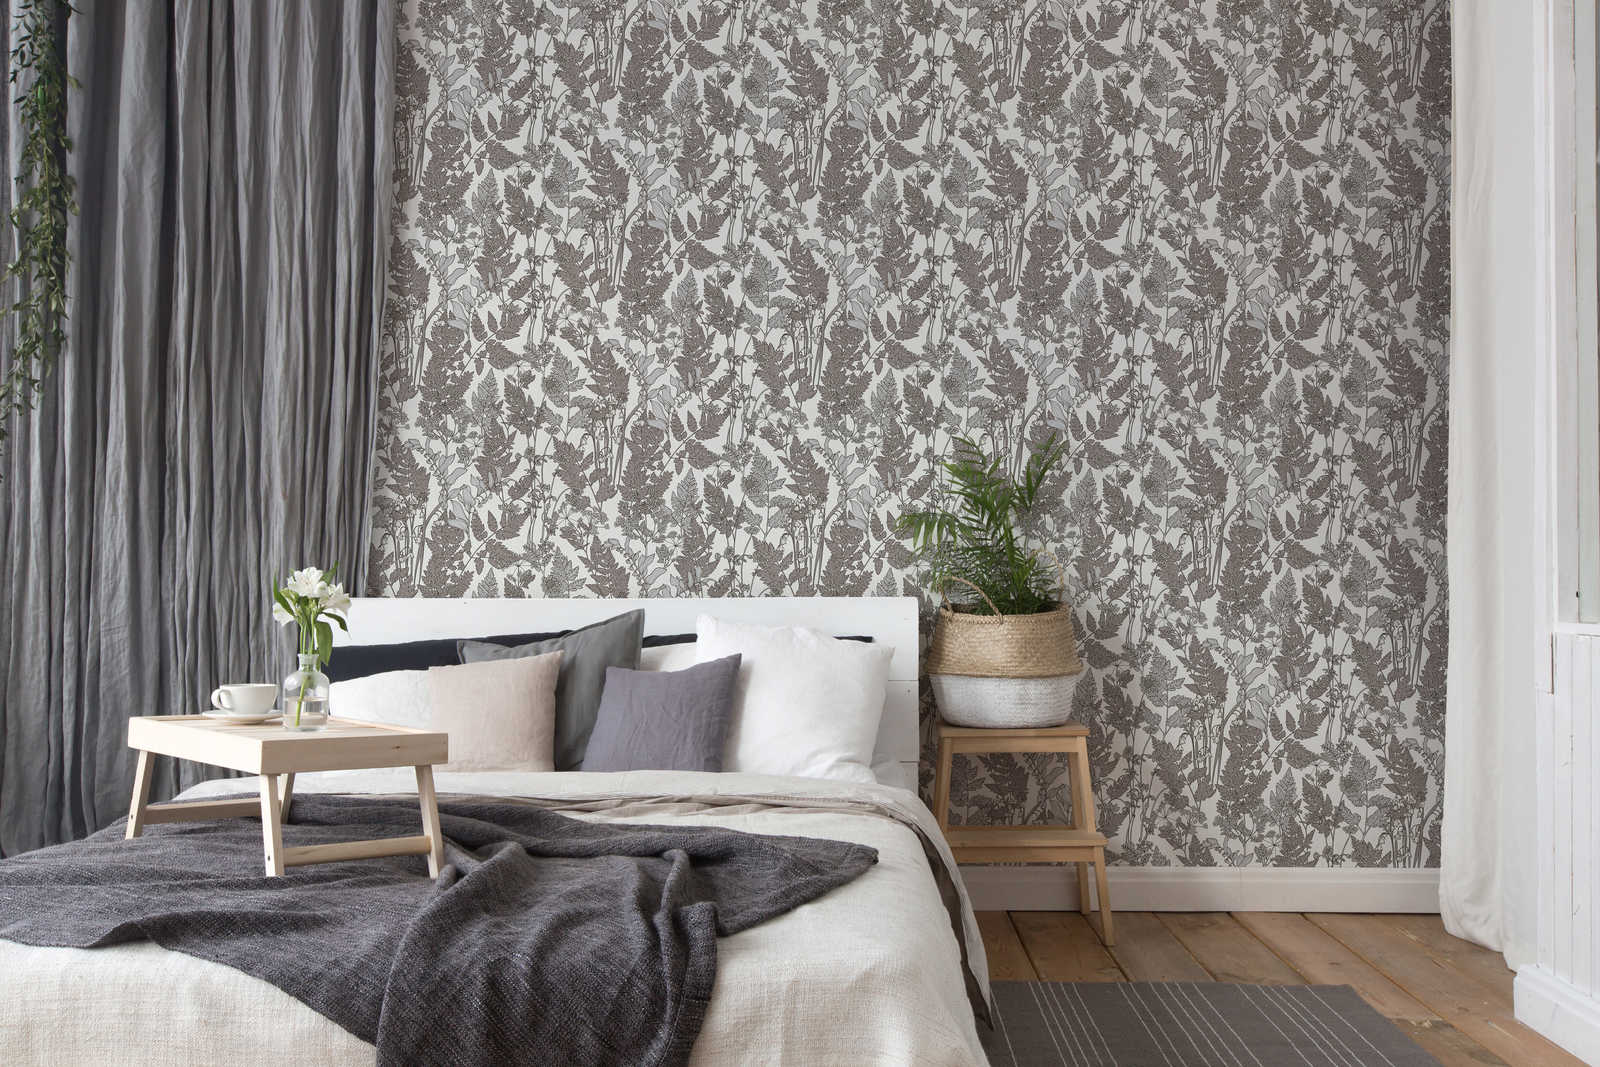             Natur Tapete Blätter & Blüten im modernen Landhaus Stil – Grau, Weiß
        